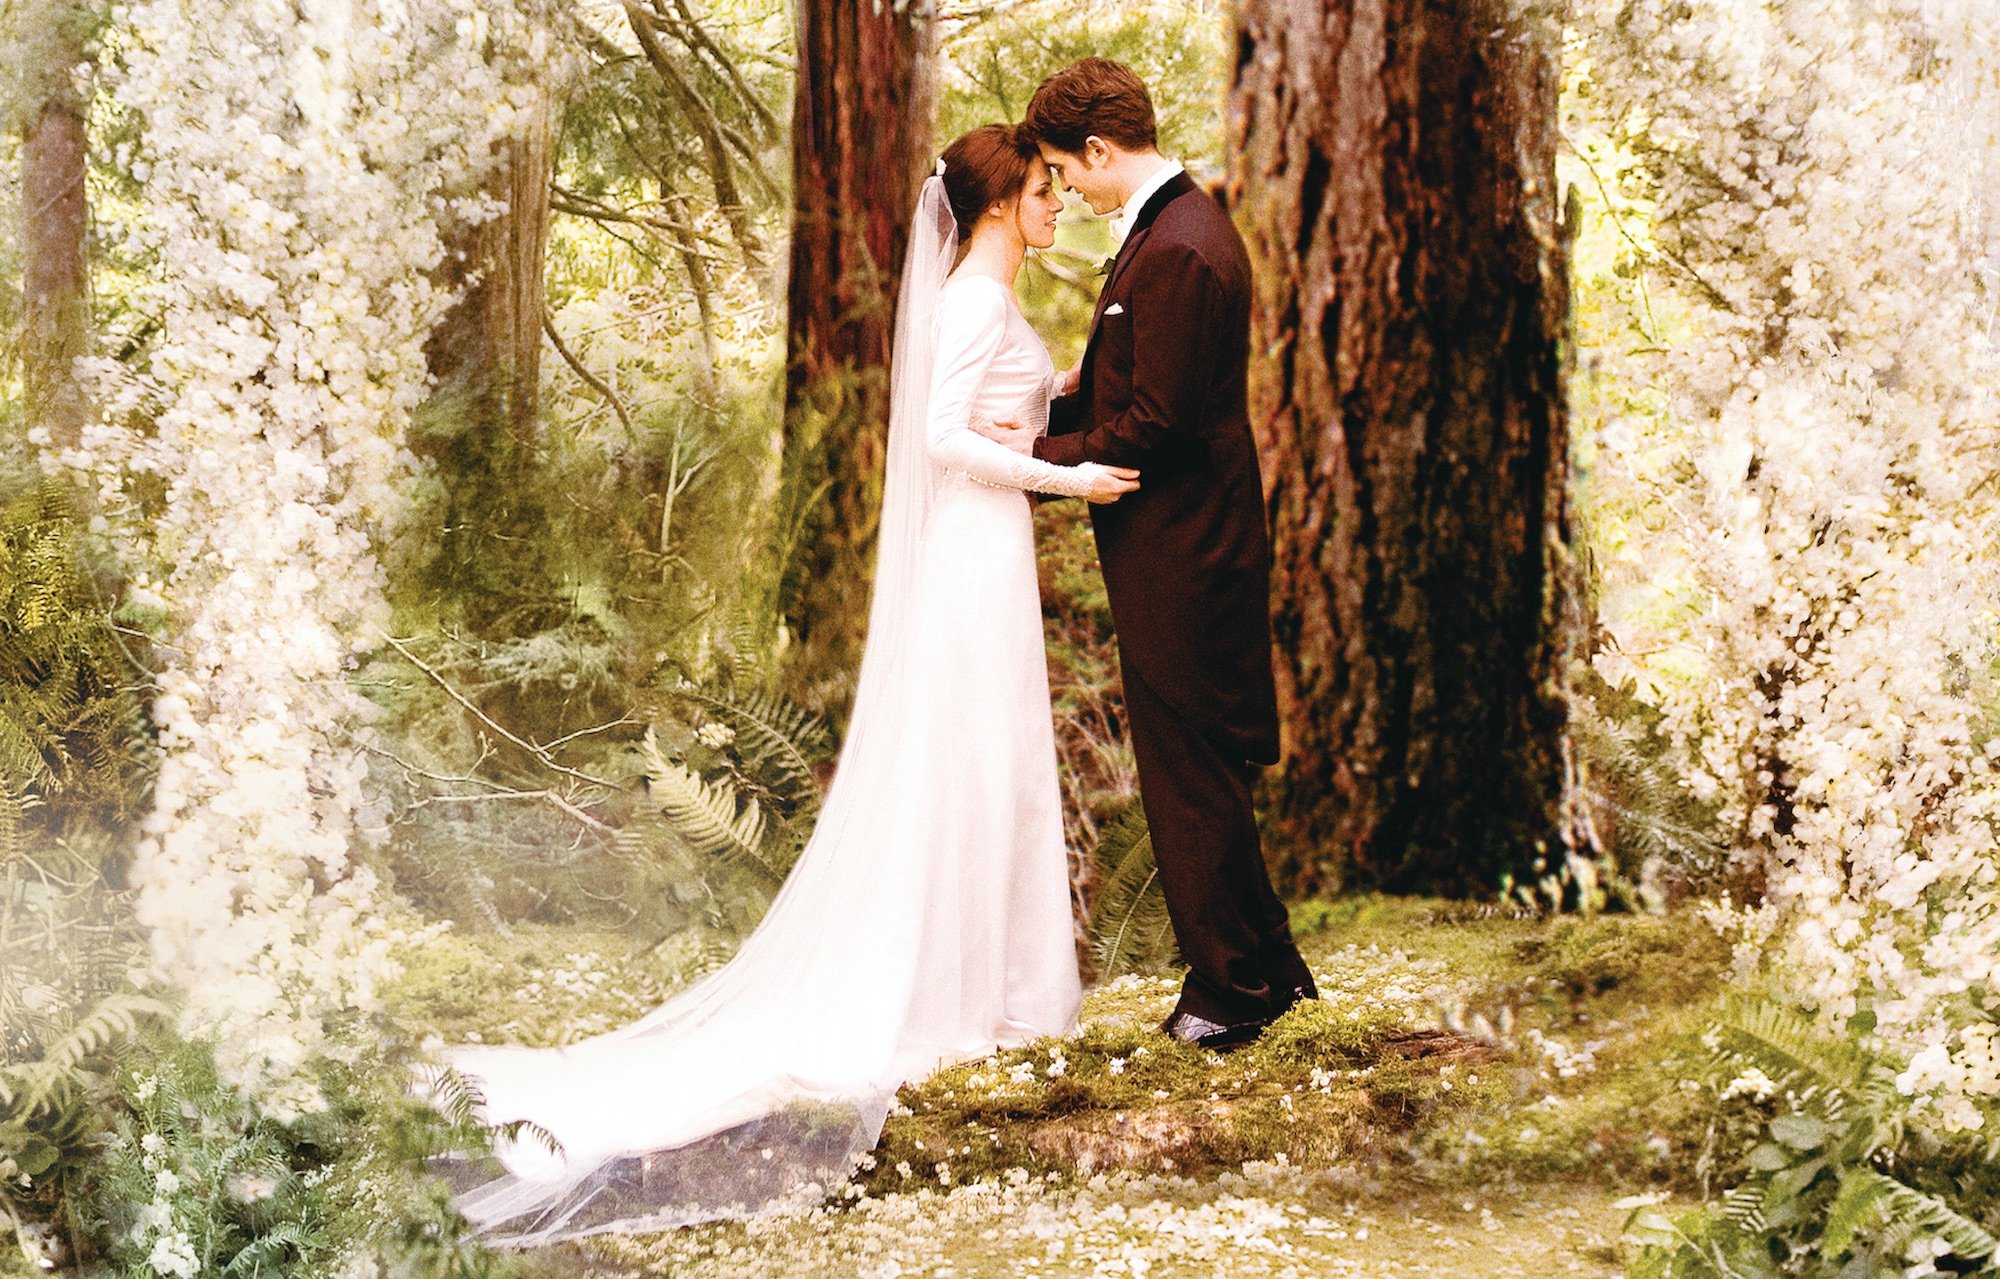 Bella (Kristen Stewart) and Edward (Robert Pattinson) during their wedding vows in 'Breaking Dawn Part 1.'